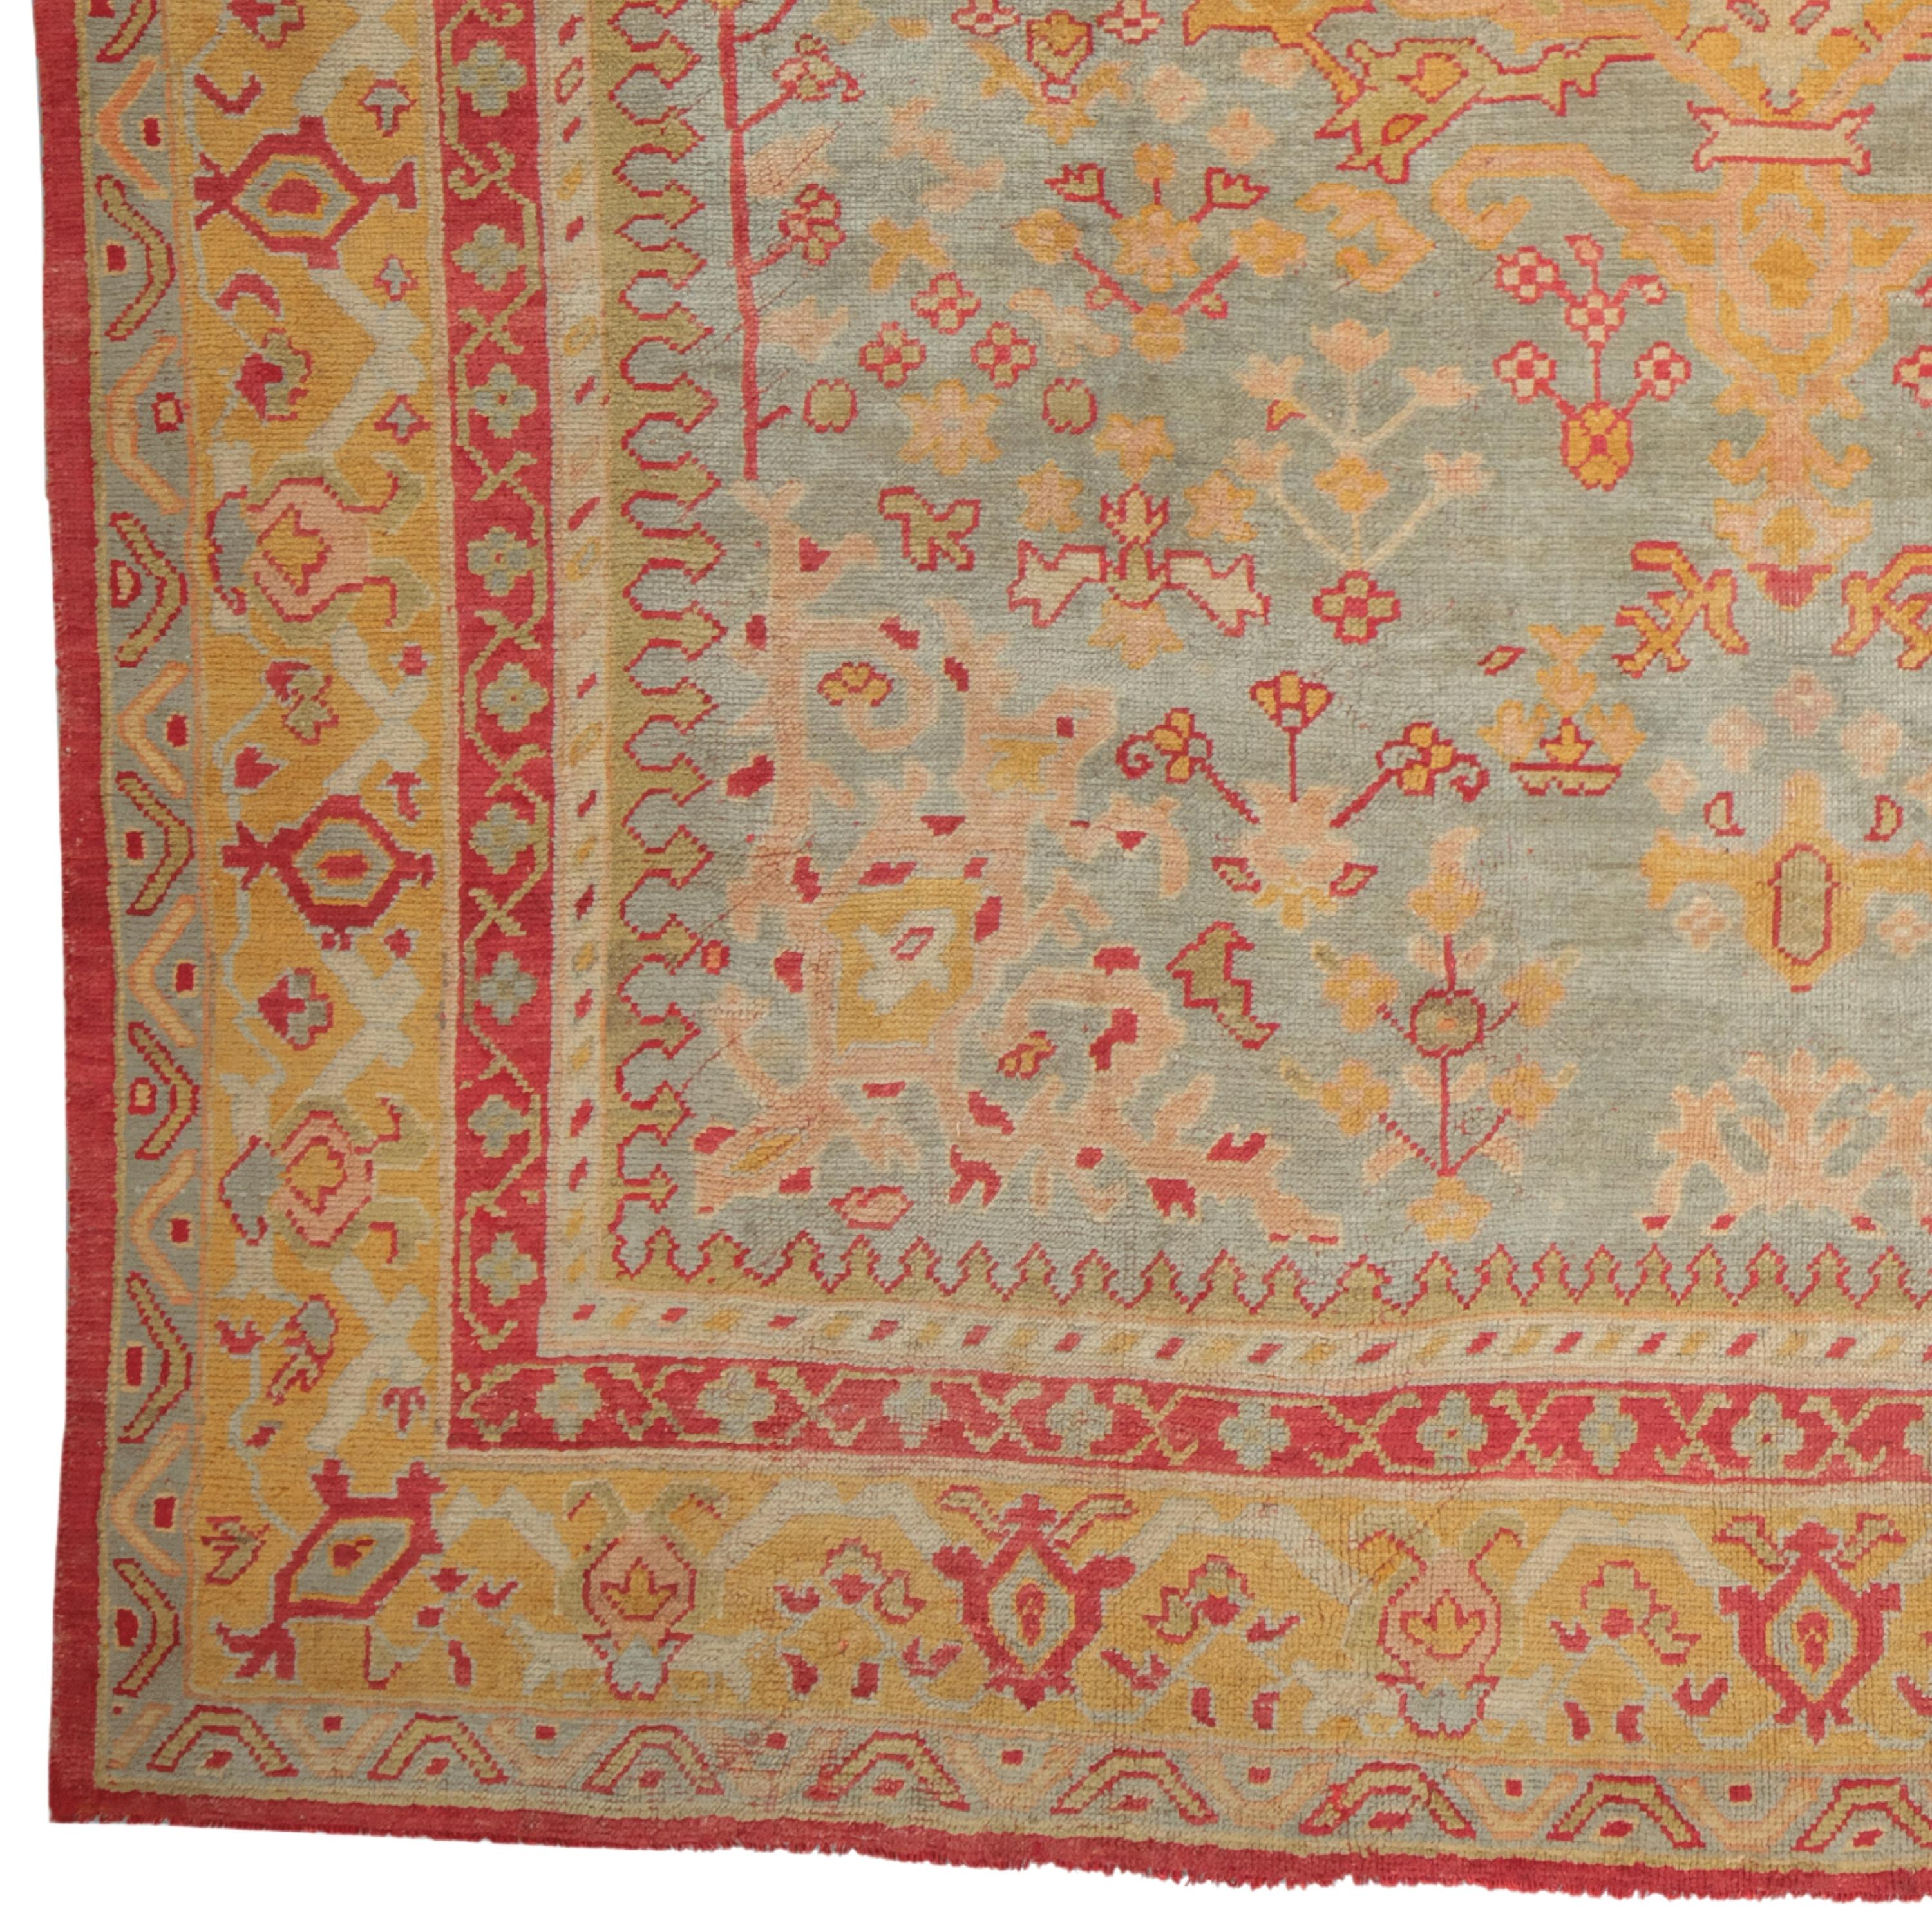 Eine historische Schönheit: Antiker Uschak-Teppich vom Ende des 19. Jahrhunderts

Wenn Sie Ihr Zuhause historisch und künstlerisch aufwerten wollen, ist dieser antike Teppich genau das Richtige für Sie. Dieser Teppich ist ein Uschak-Teppich, der